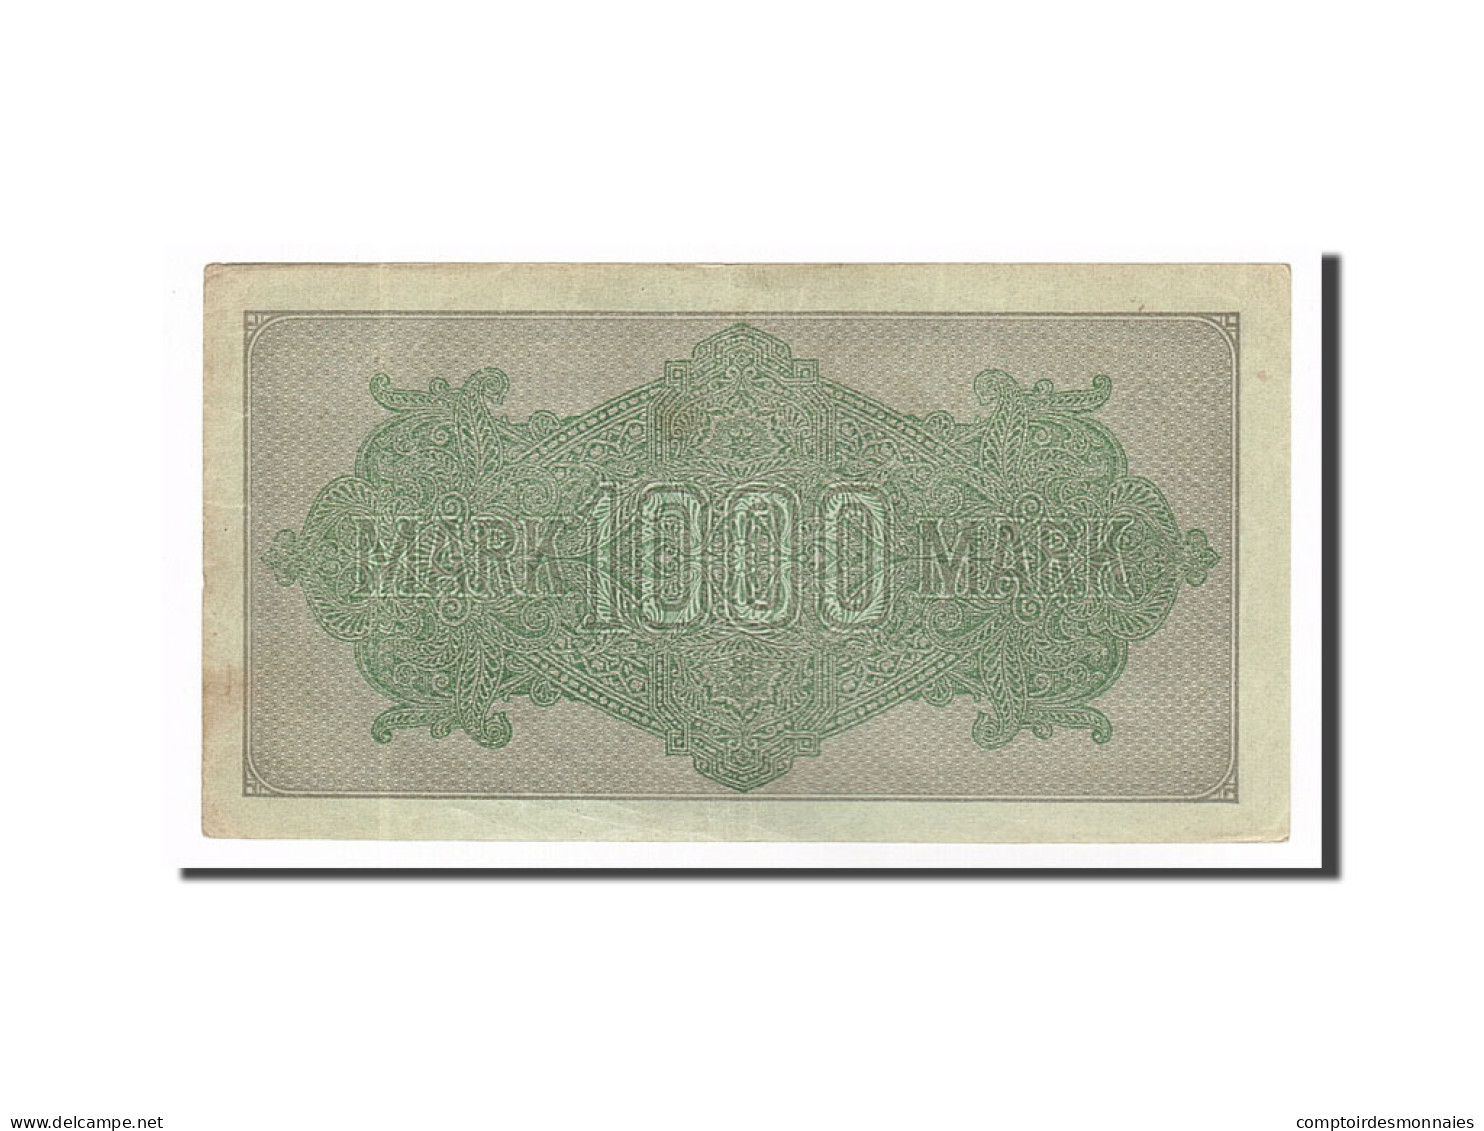 Billet, Allemagne, 1000 Mark, 1922, 1922-09-15, SUP - 1000 Mark